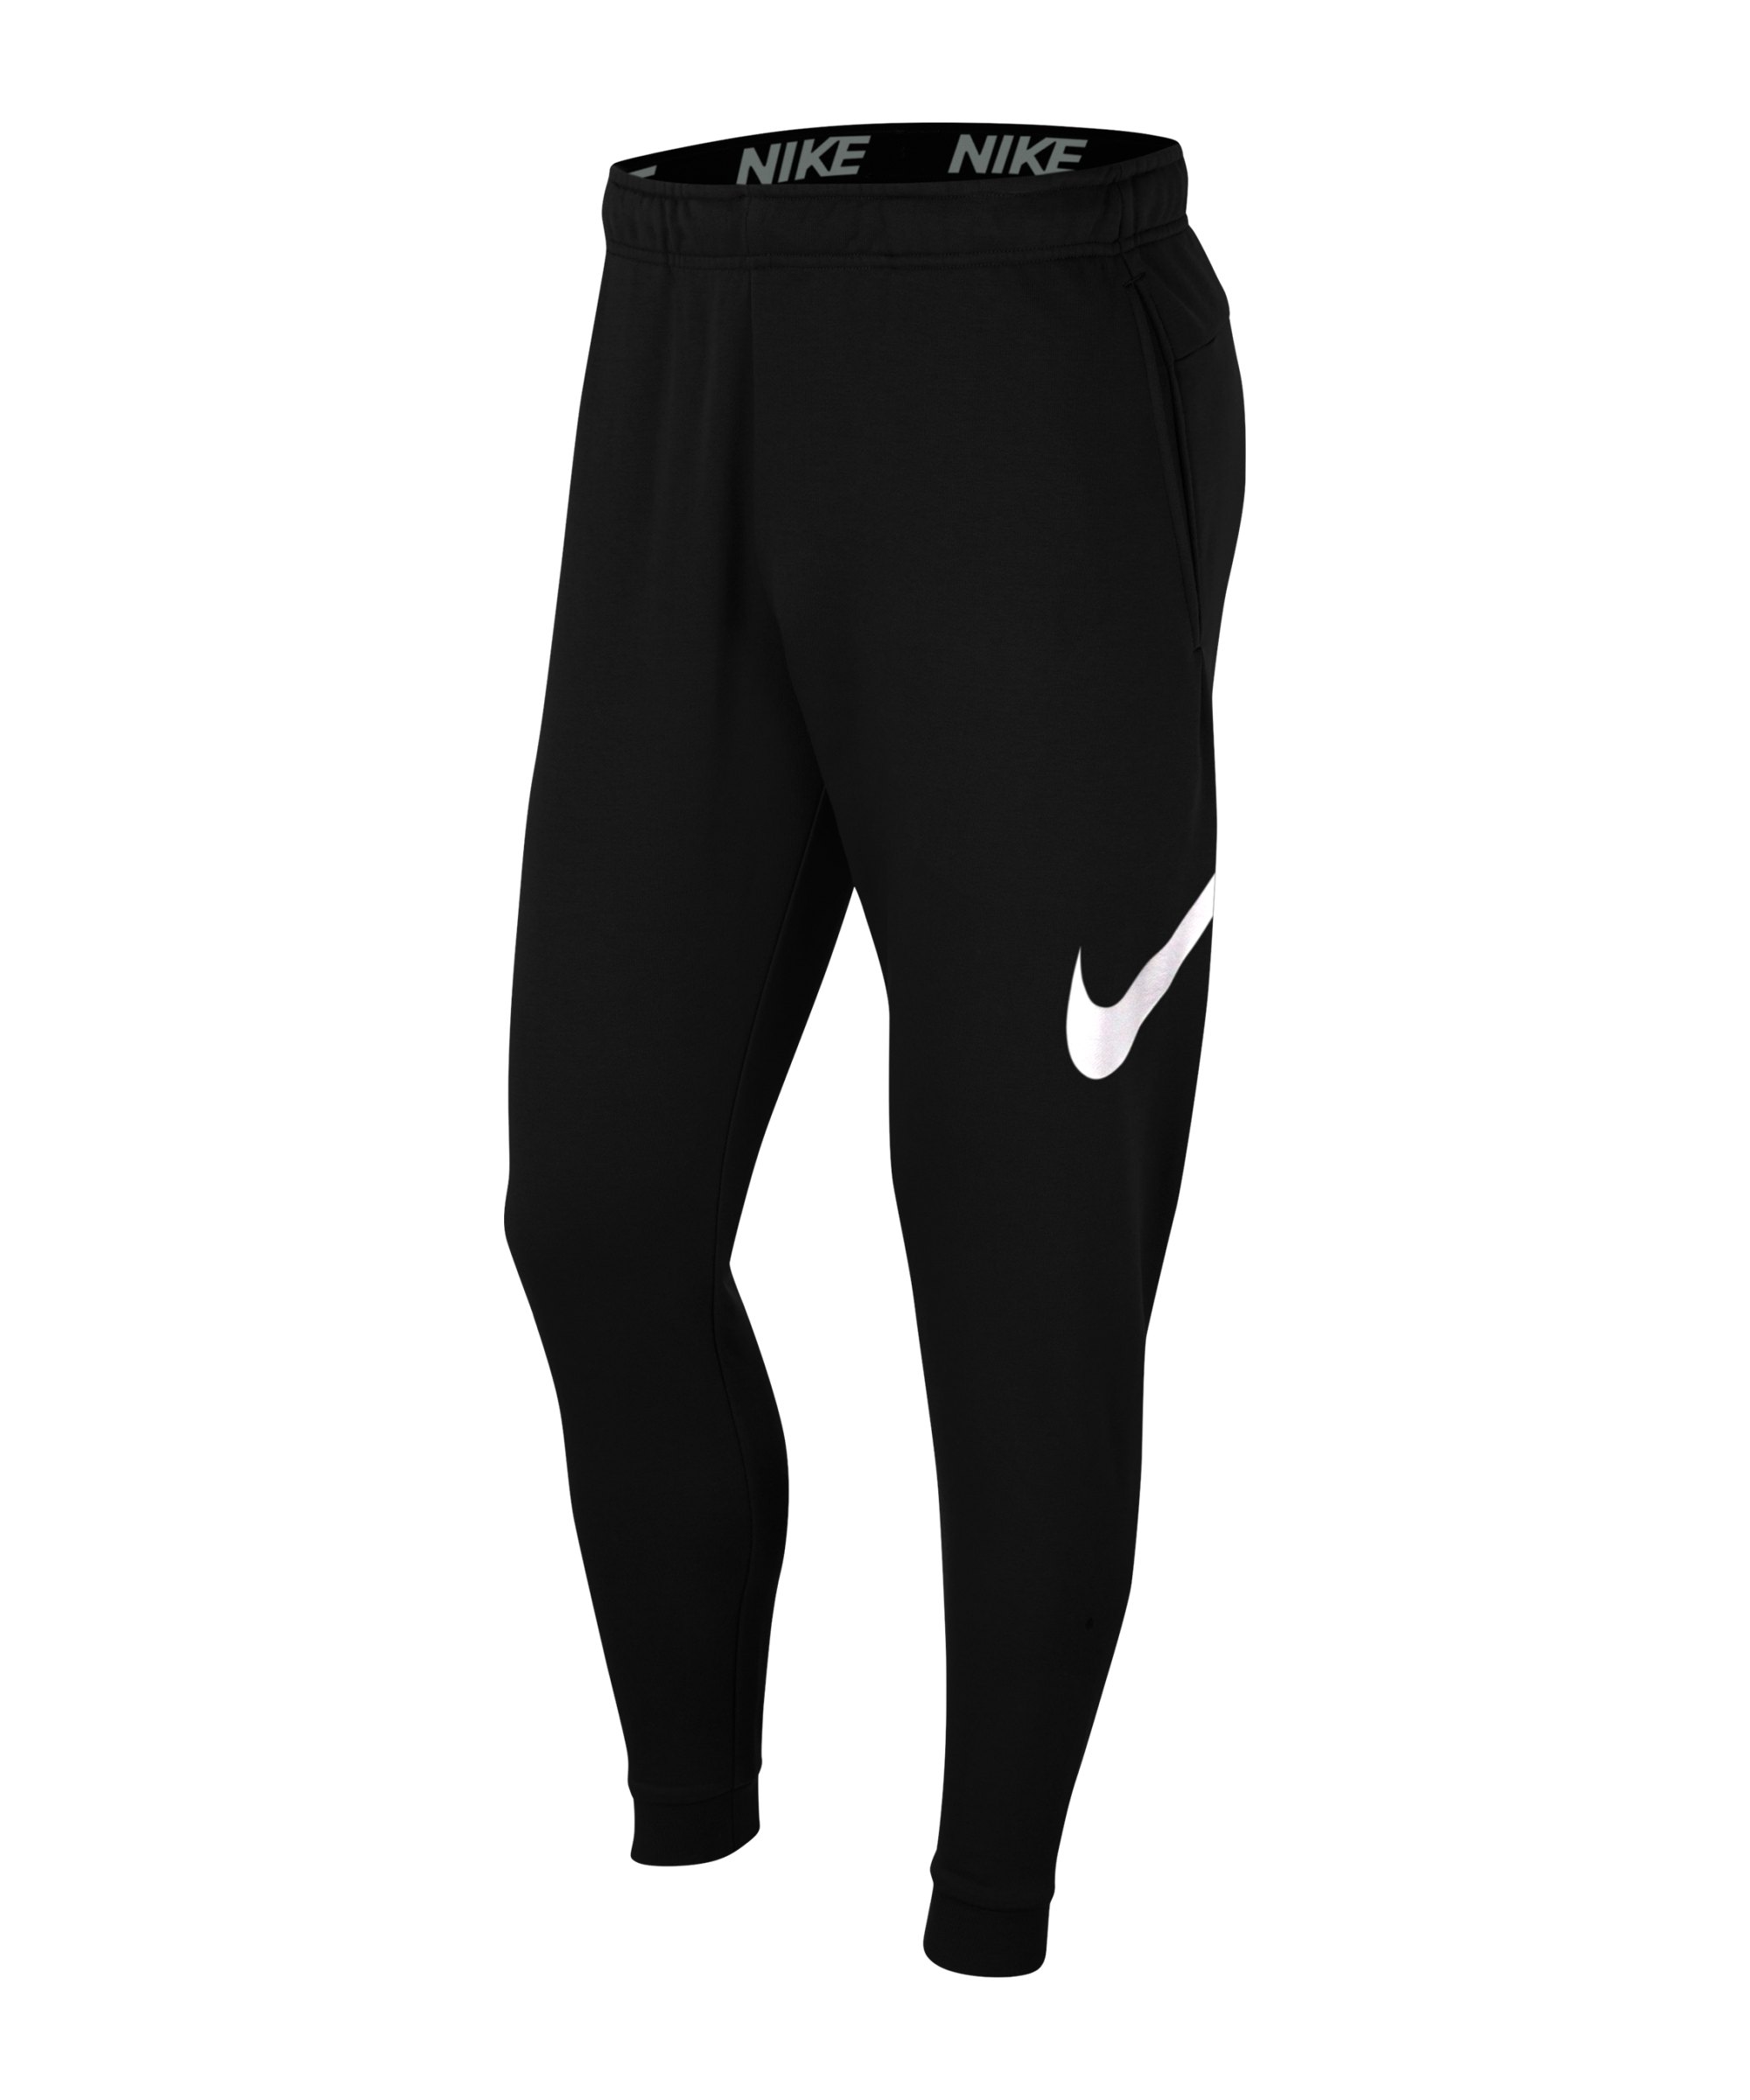 Nike Swoosh Taper Trainingshose Schwarz F0103 - schwarz